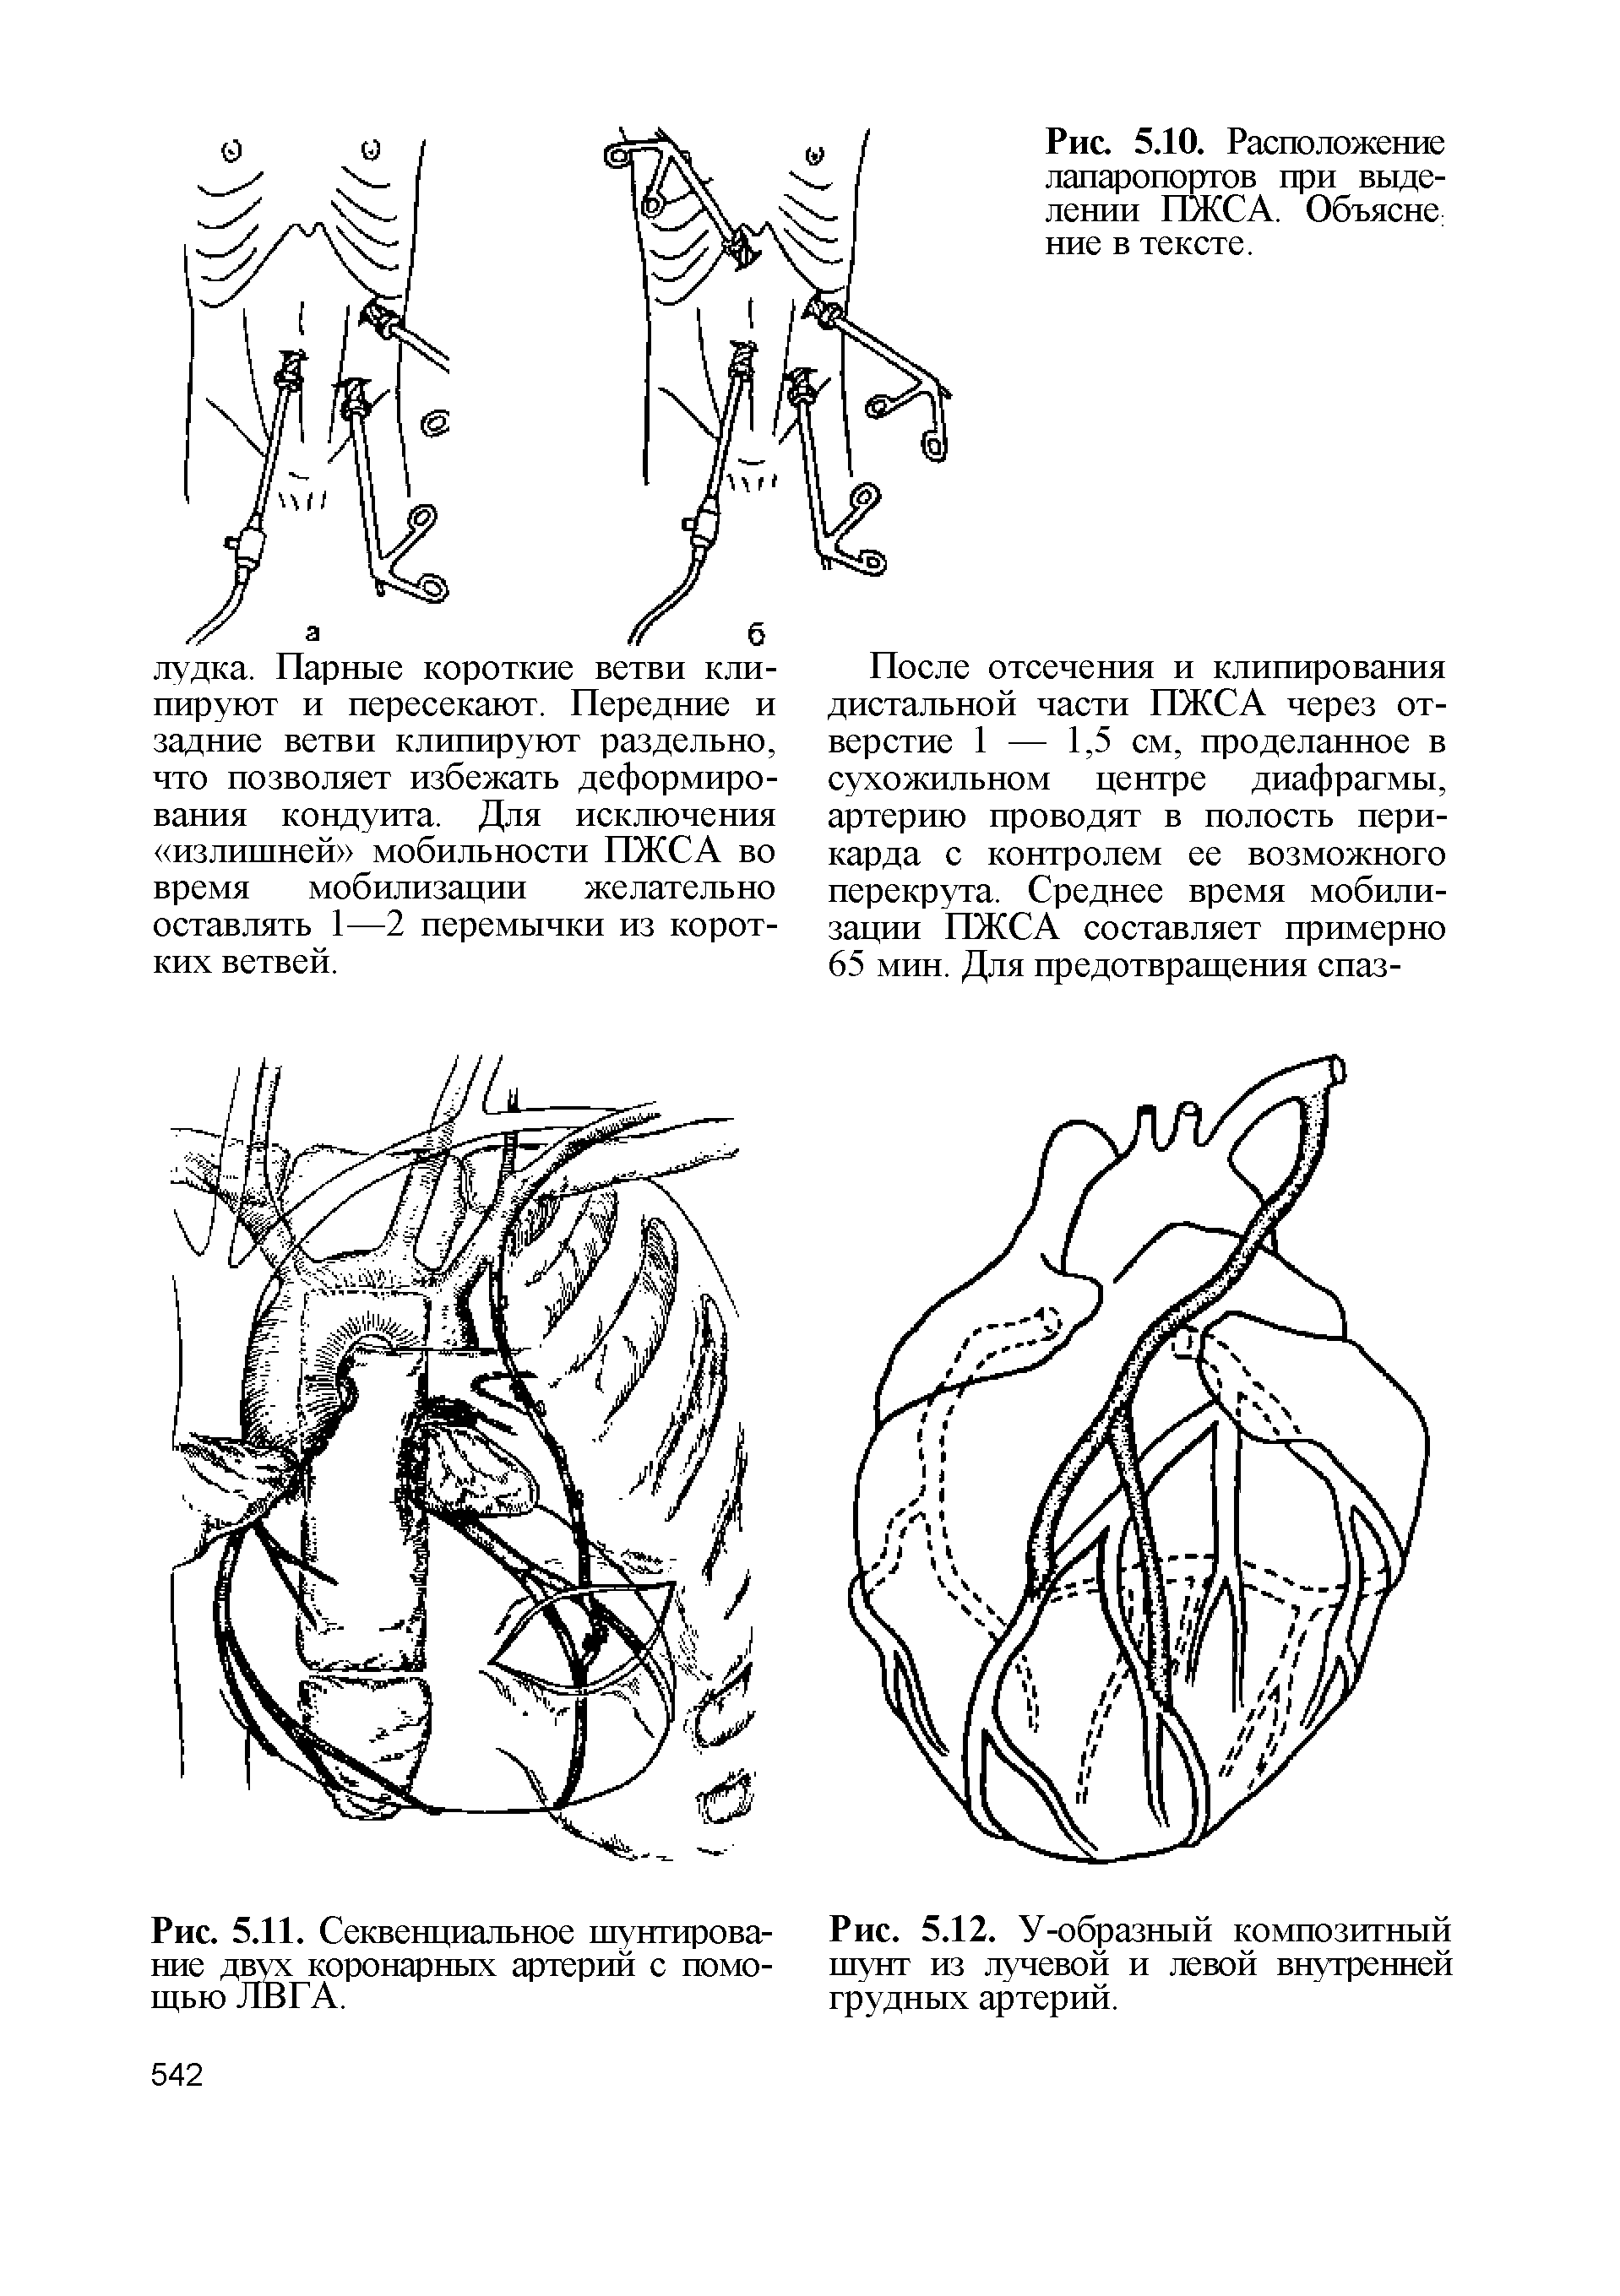 Рис. 5.12. У-образный композитный шунт из лучевой и левой внутренней грудных артерий.